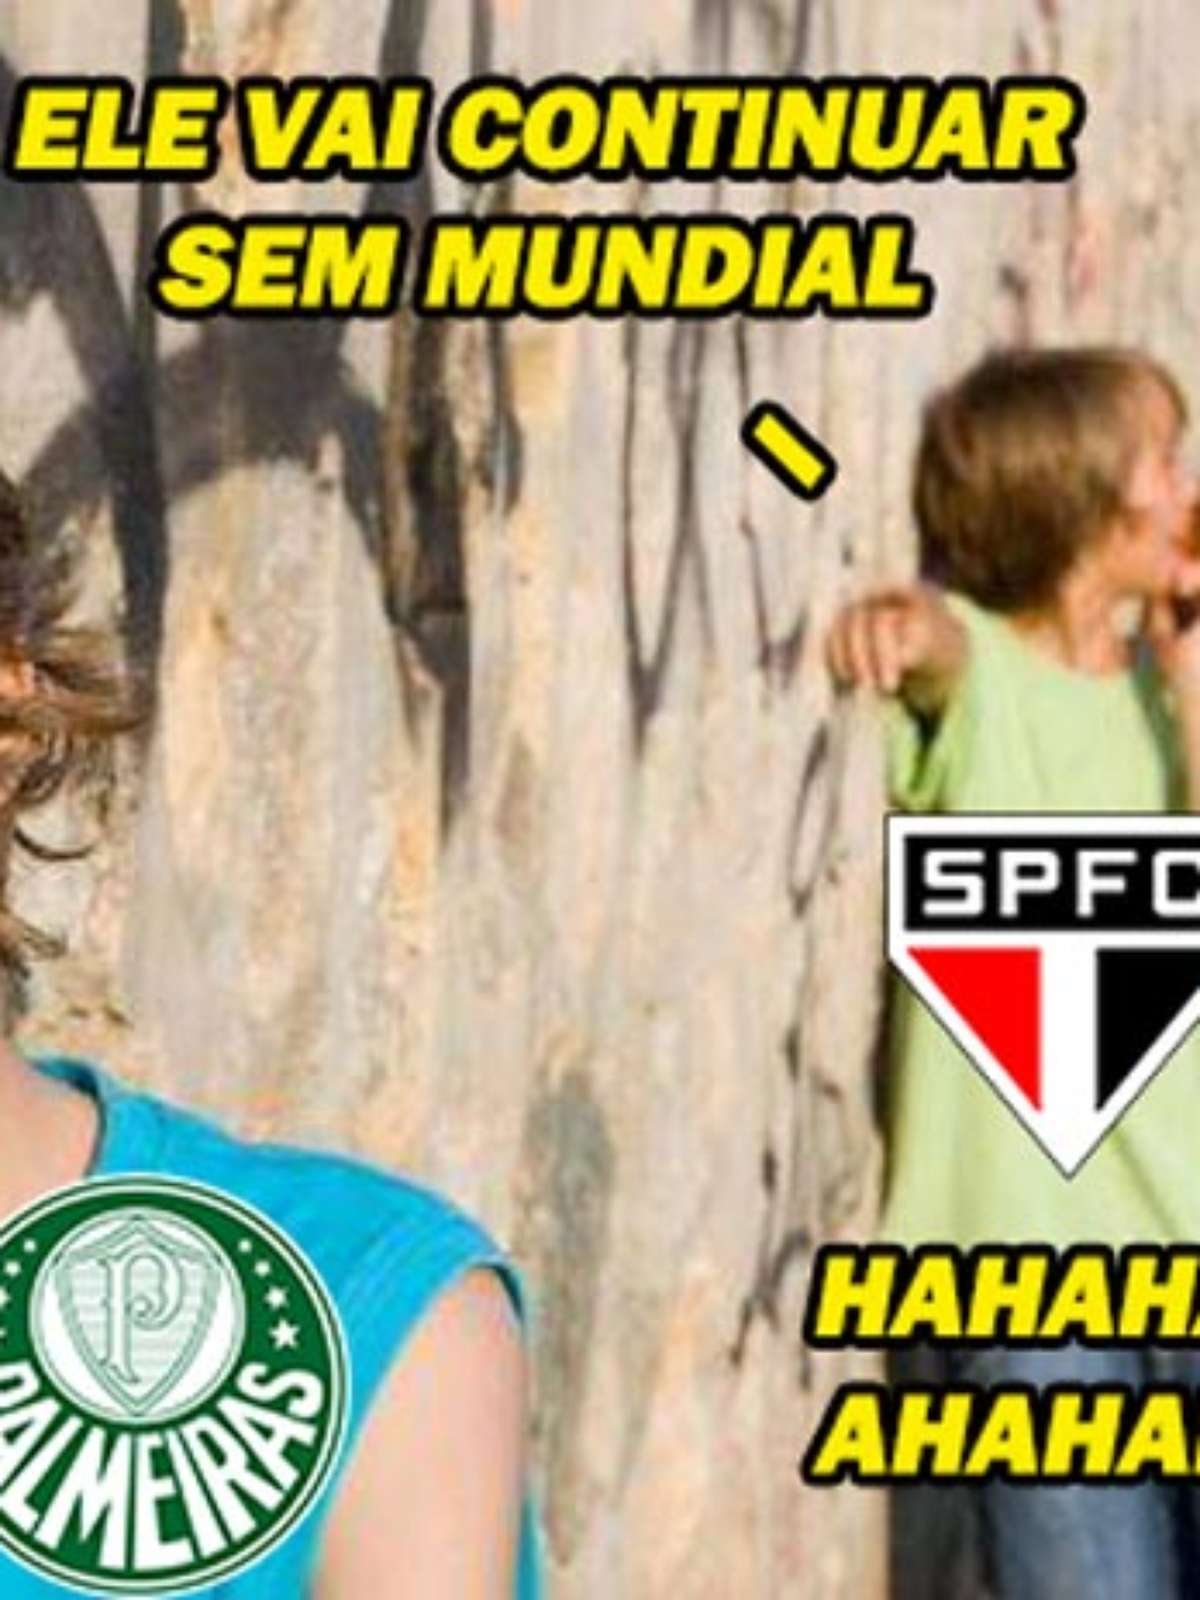 Porque o Palmeiras não tem mundial? - Quora